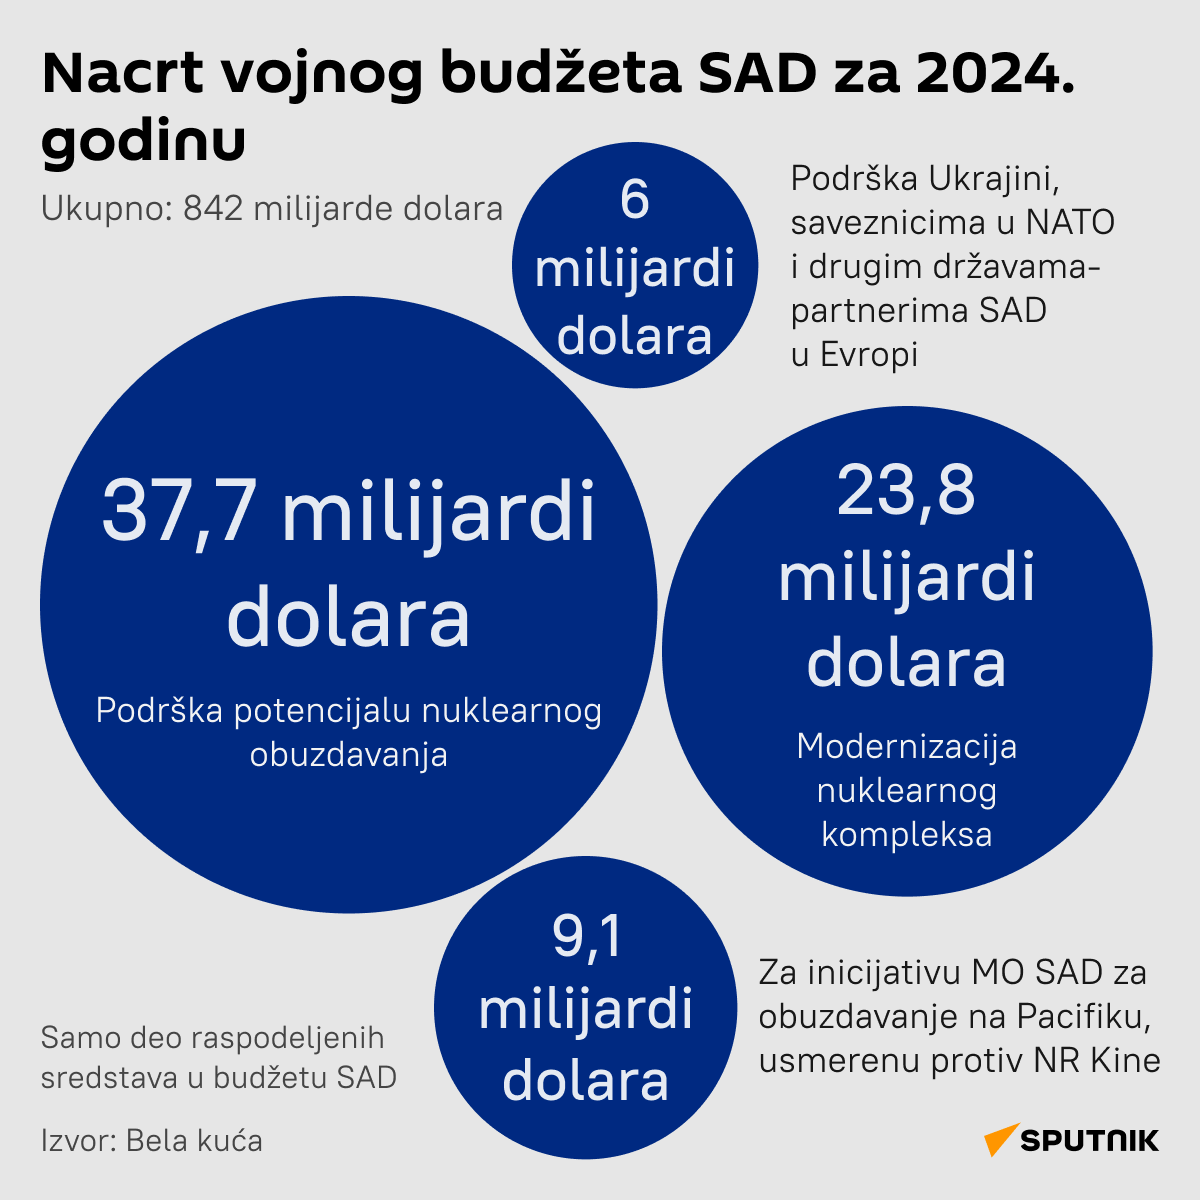 Infografika  Nacrt vojnog budžeta SAD za 2024. LATINICA desk - Sputnik Srbija